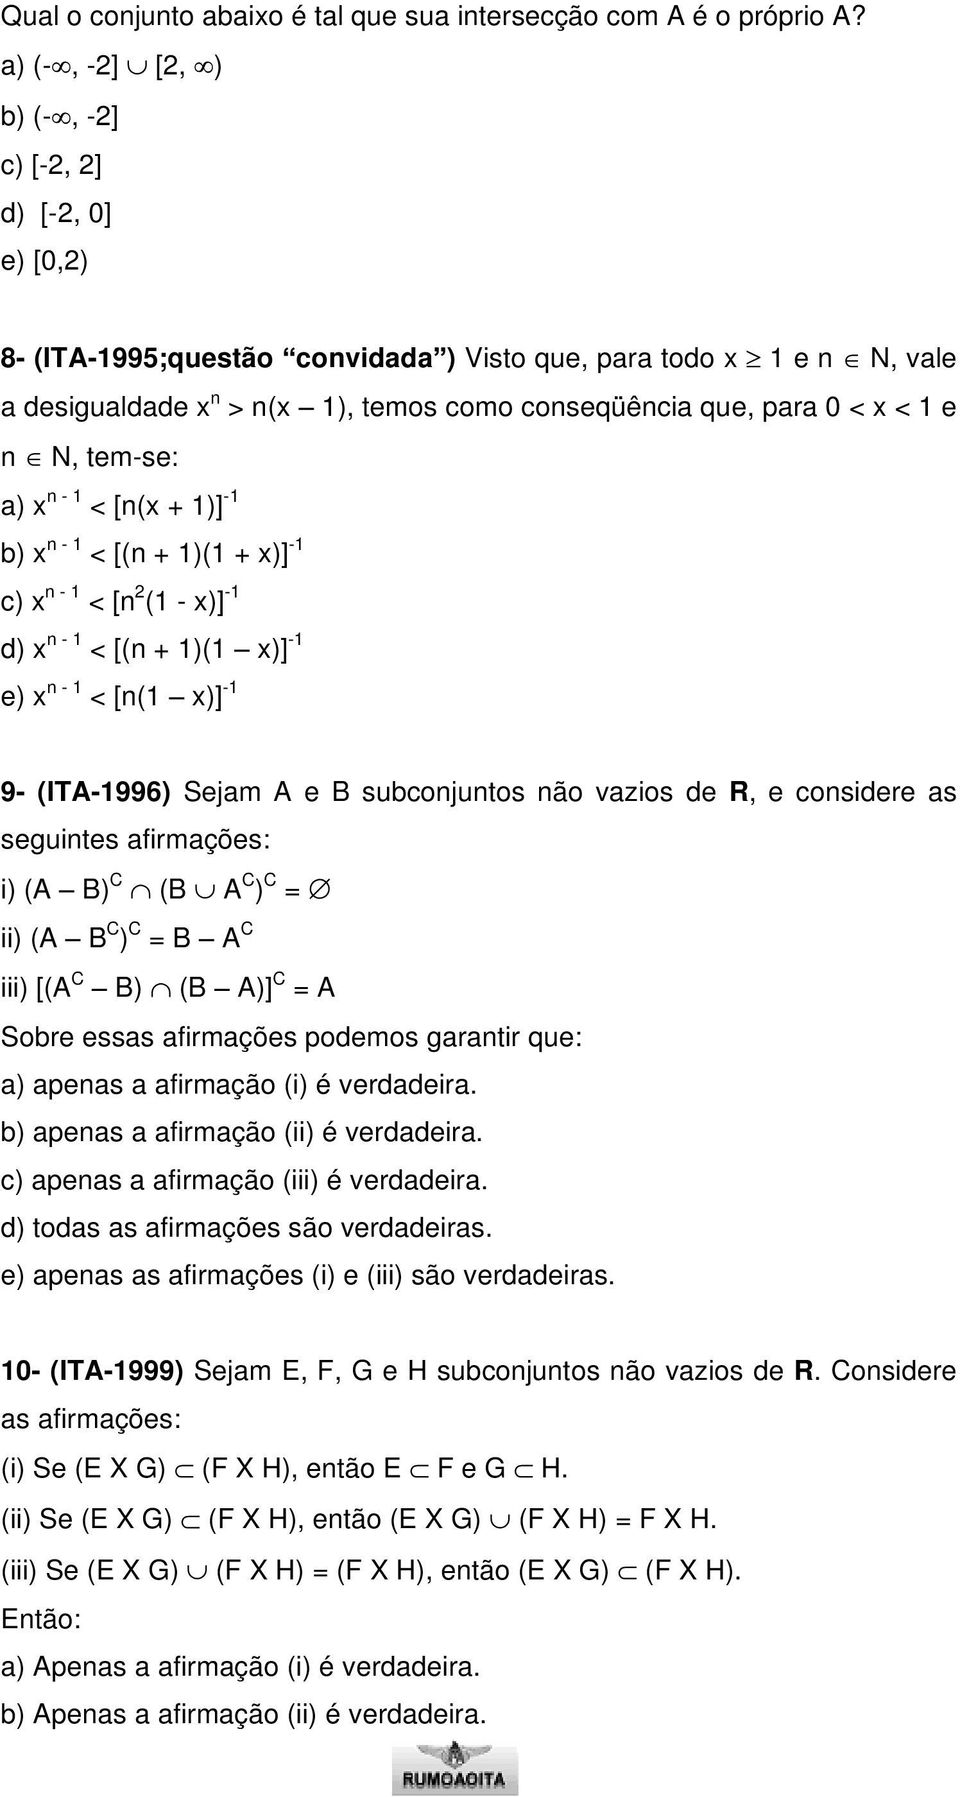 1 e n N, tem-se: a) x n - 1 < [n(x + 1)] -1 b) x n - 1 < [(n + 1)(1 + x)] -1 c) x n - 1 < [n 2 (1 - x)] -1 d) x n - 1 < [(n + 1)(1 x)] -1 e) x n - 1 < [n(1 x)] -1 9- (ITA-1996) Sejam A e B